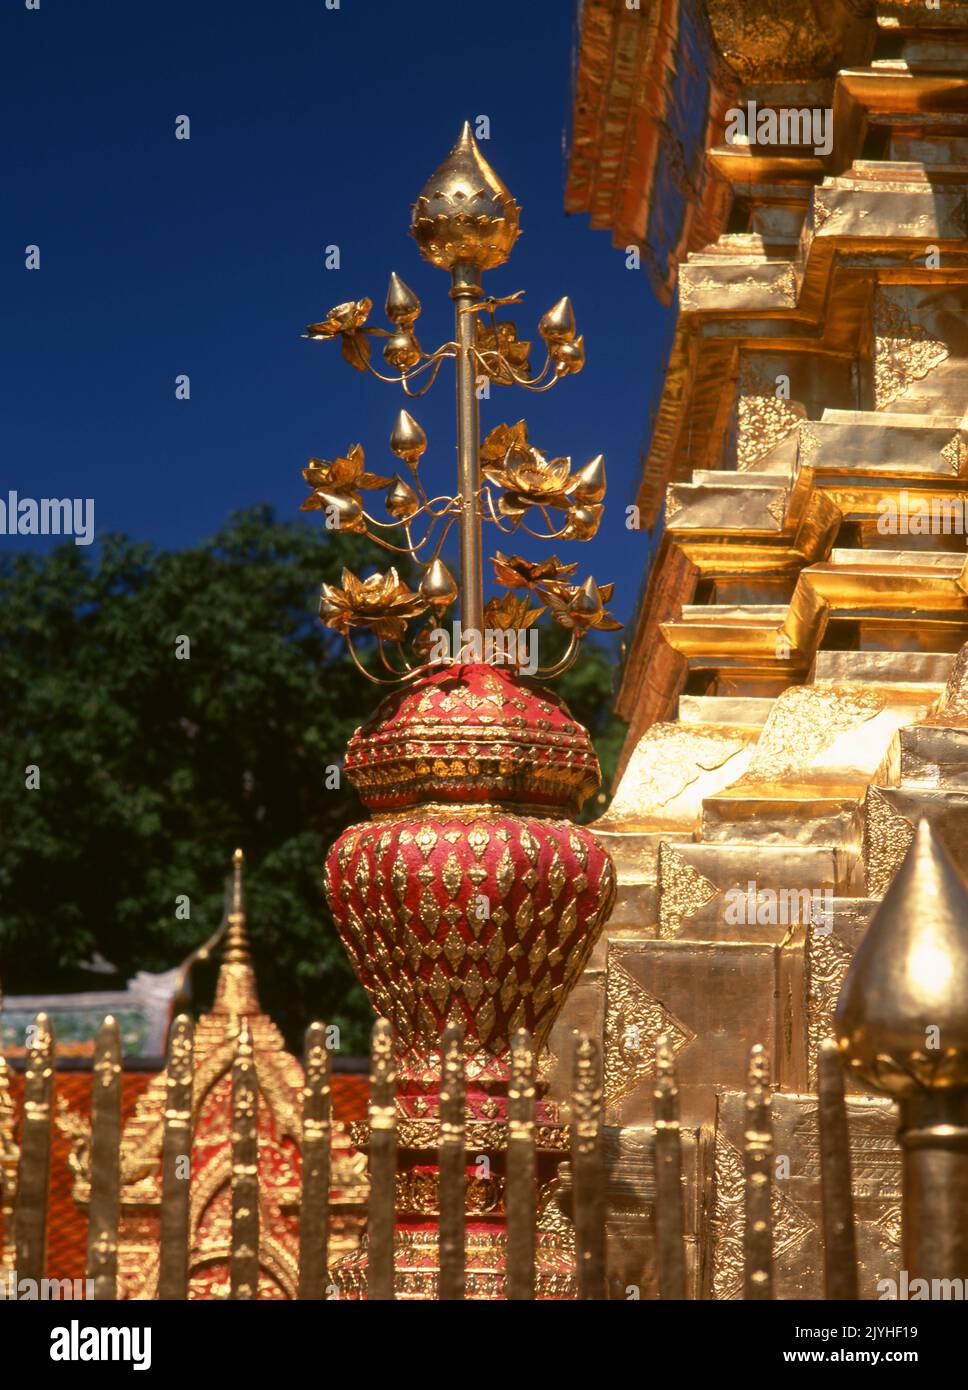 Thailand: Wat Phrathat Doi Suthep, ein buddhistischer Tempel der Theravada, der sich auf dem Doi Suthep (Suthep-Berg) befindet und die Stadt Chiang Mai überblickt. Der prächtige vergoldete Chedi aus dem 16.. Jahrhundert bietet einen herrlichen Blick über das Tal Chiang Mai bis zum Fluss Ping. König Mengrai gründete 1296 die Stadt Chiang Mai (was "neue Stadt" bedeutet) und folgte Chiang Rai als Hauptstadt des Lanna-Königreichs nach. Stockfoto